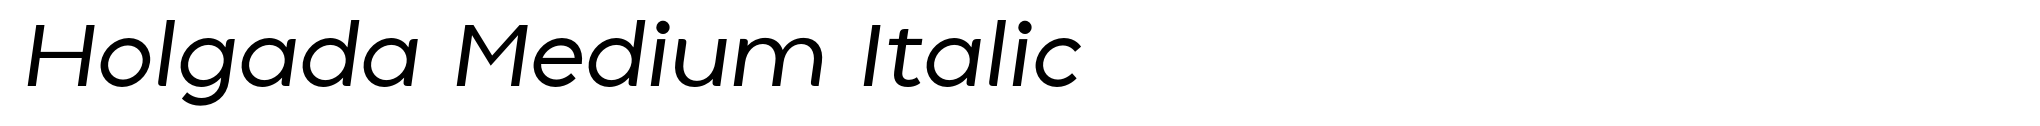 Holgada Medium Italic image